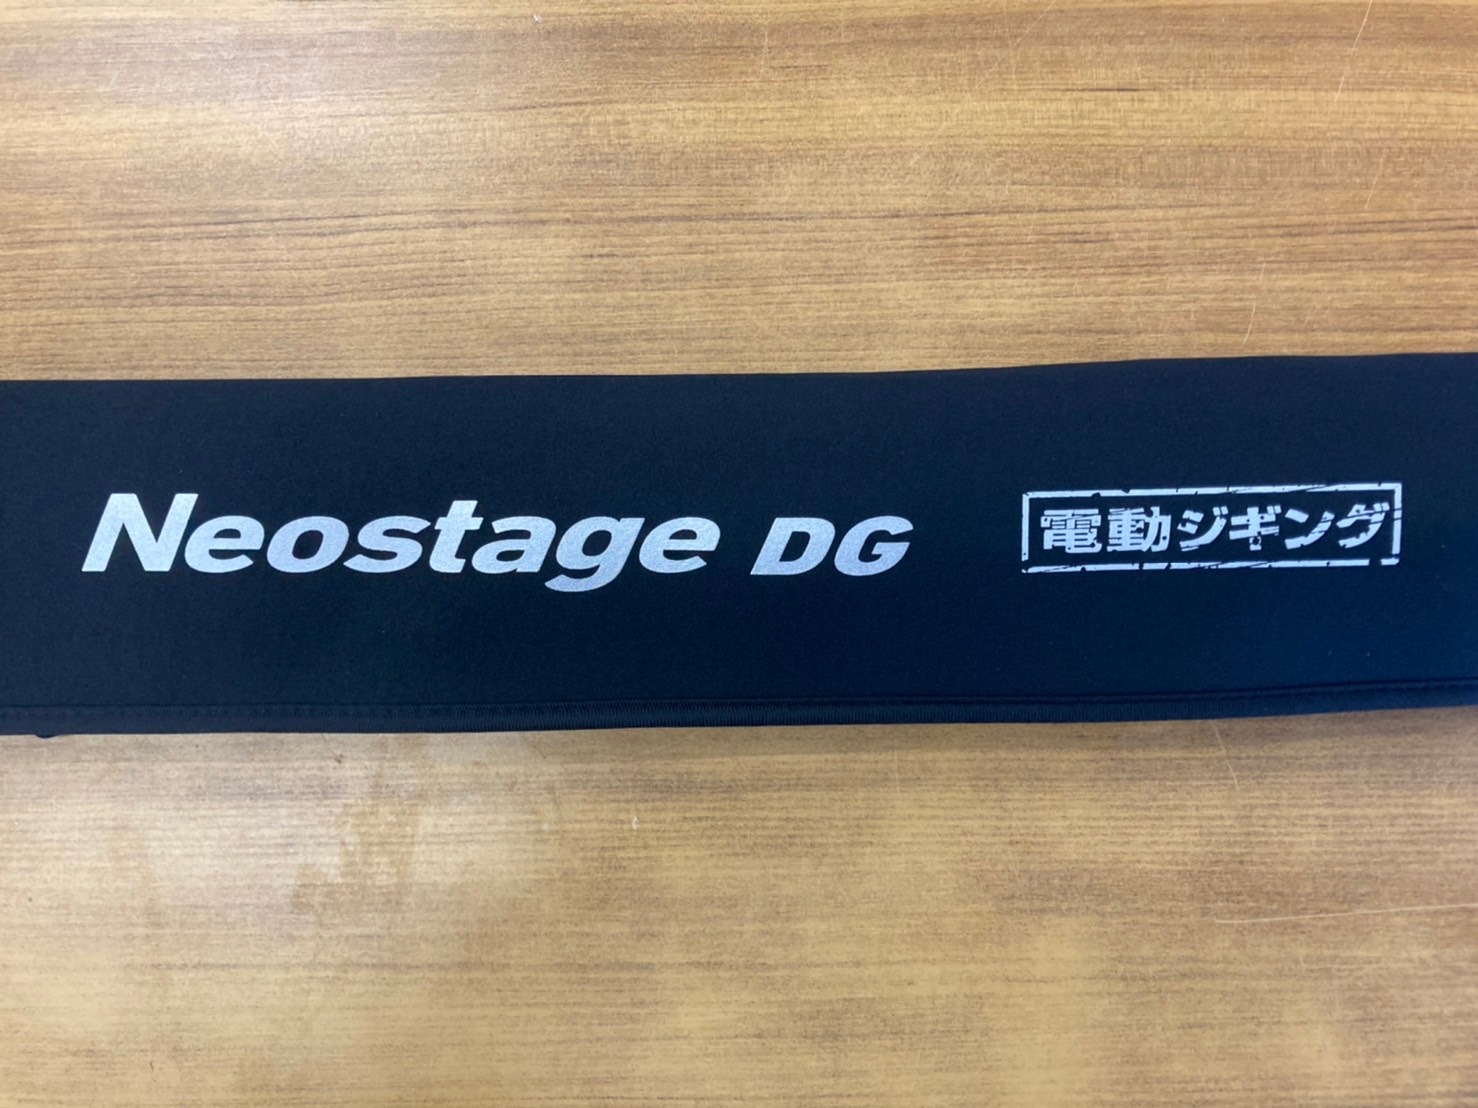 ダイワ新製品「Neostage DG」入荷！